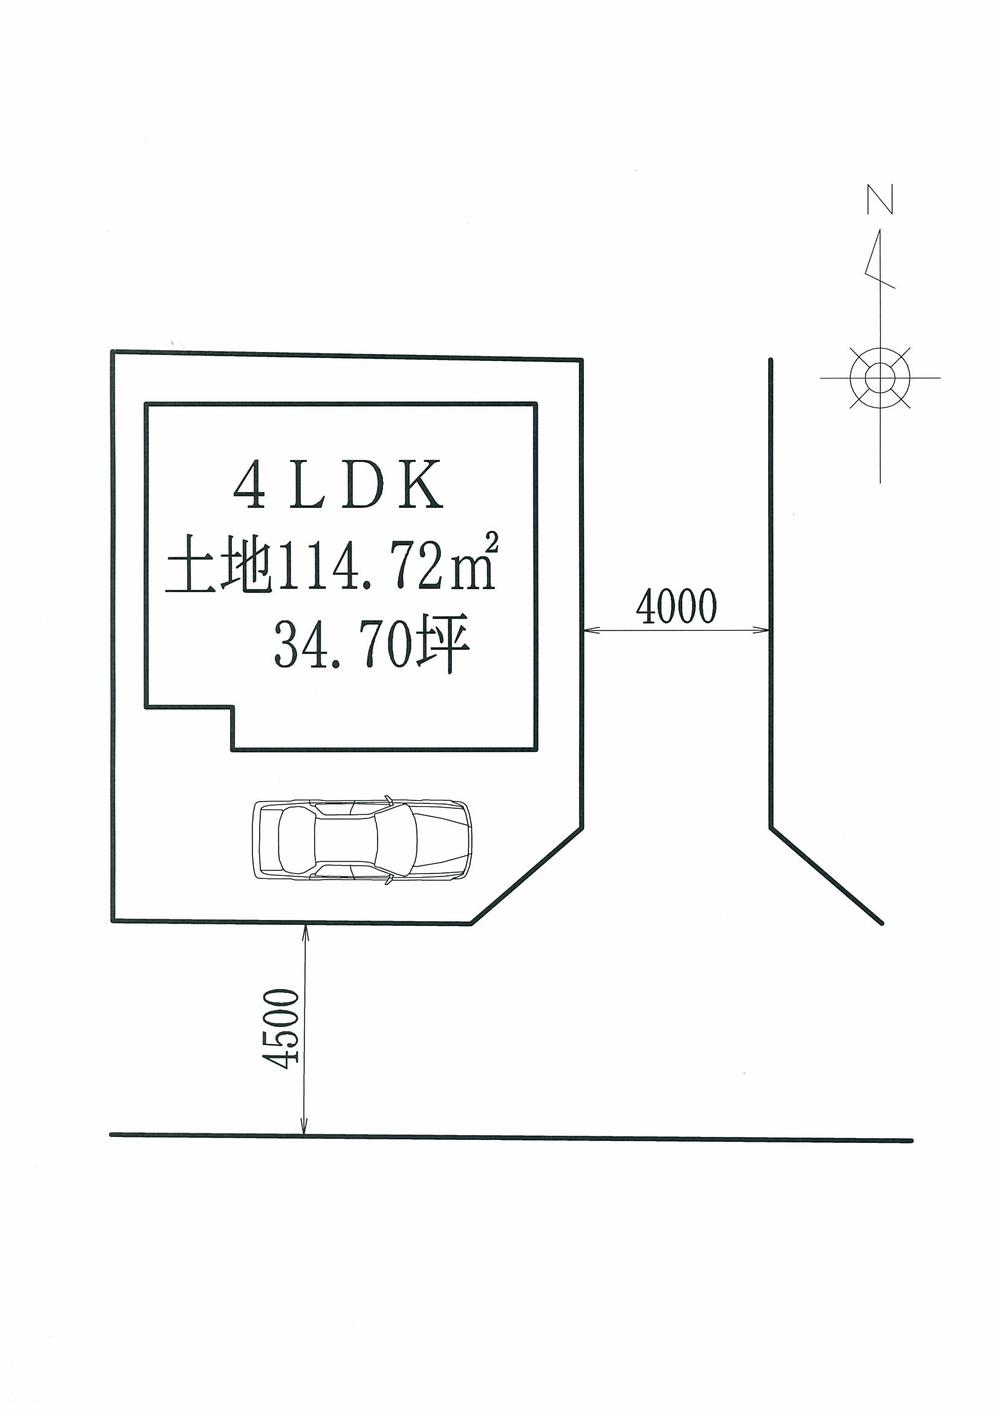 Compartment figure. 23.8 million yen, 4LDK, Land area 114.72 sq m , Building area 104.34 sq m